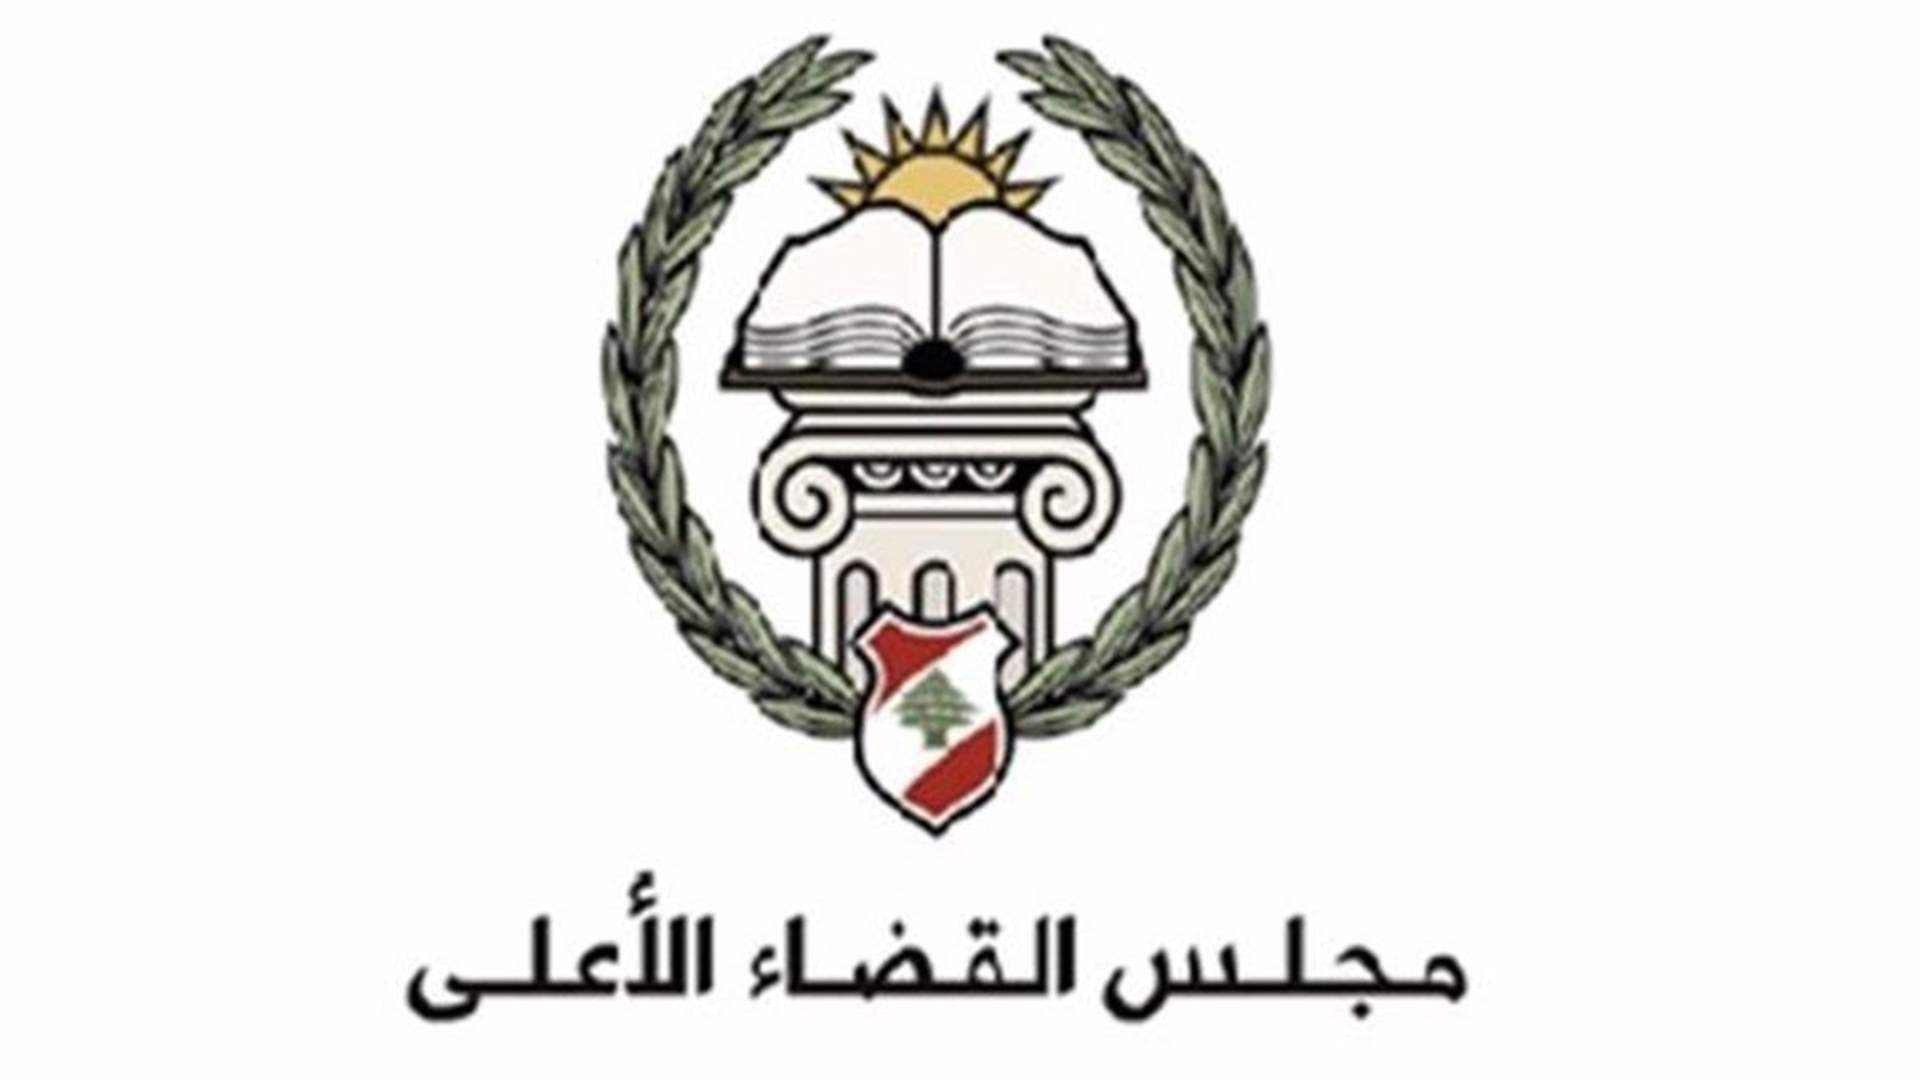  انقسام جديد داخل مجلس القضاء الاعلى (الشرق الاوسط)